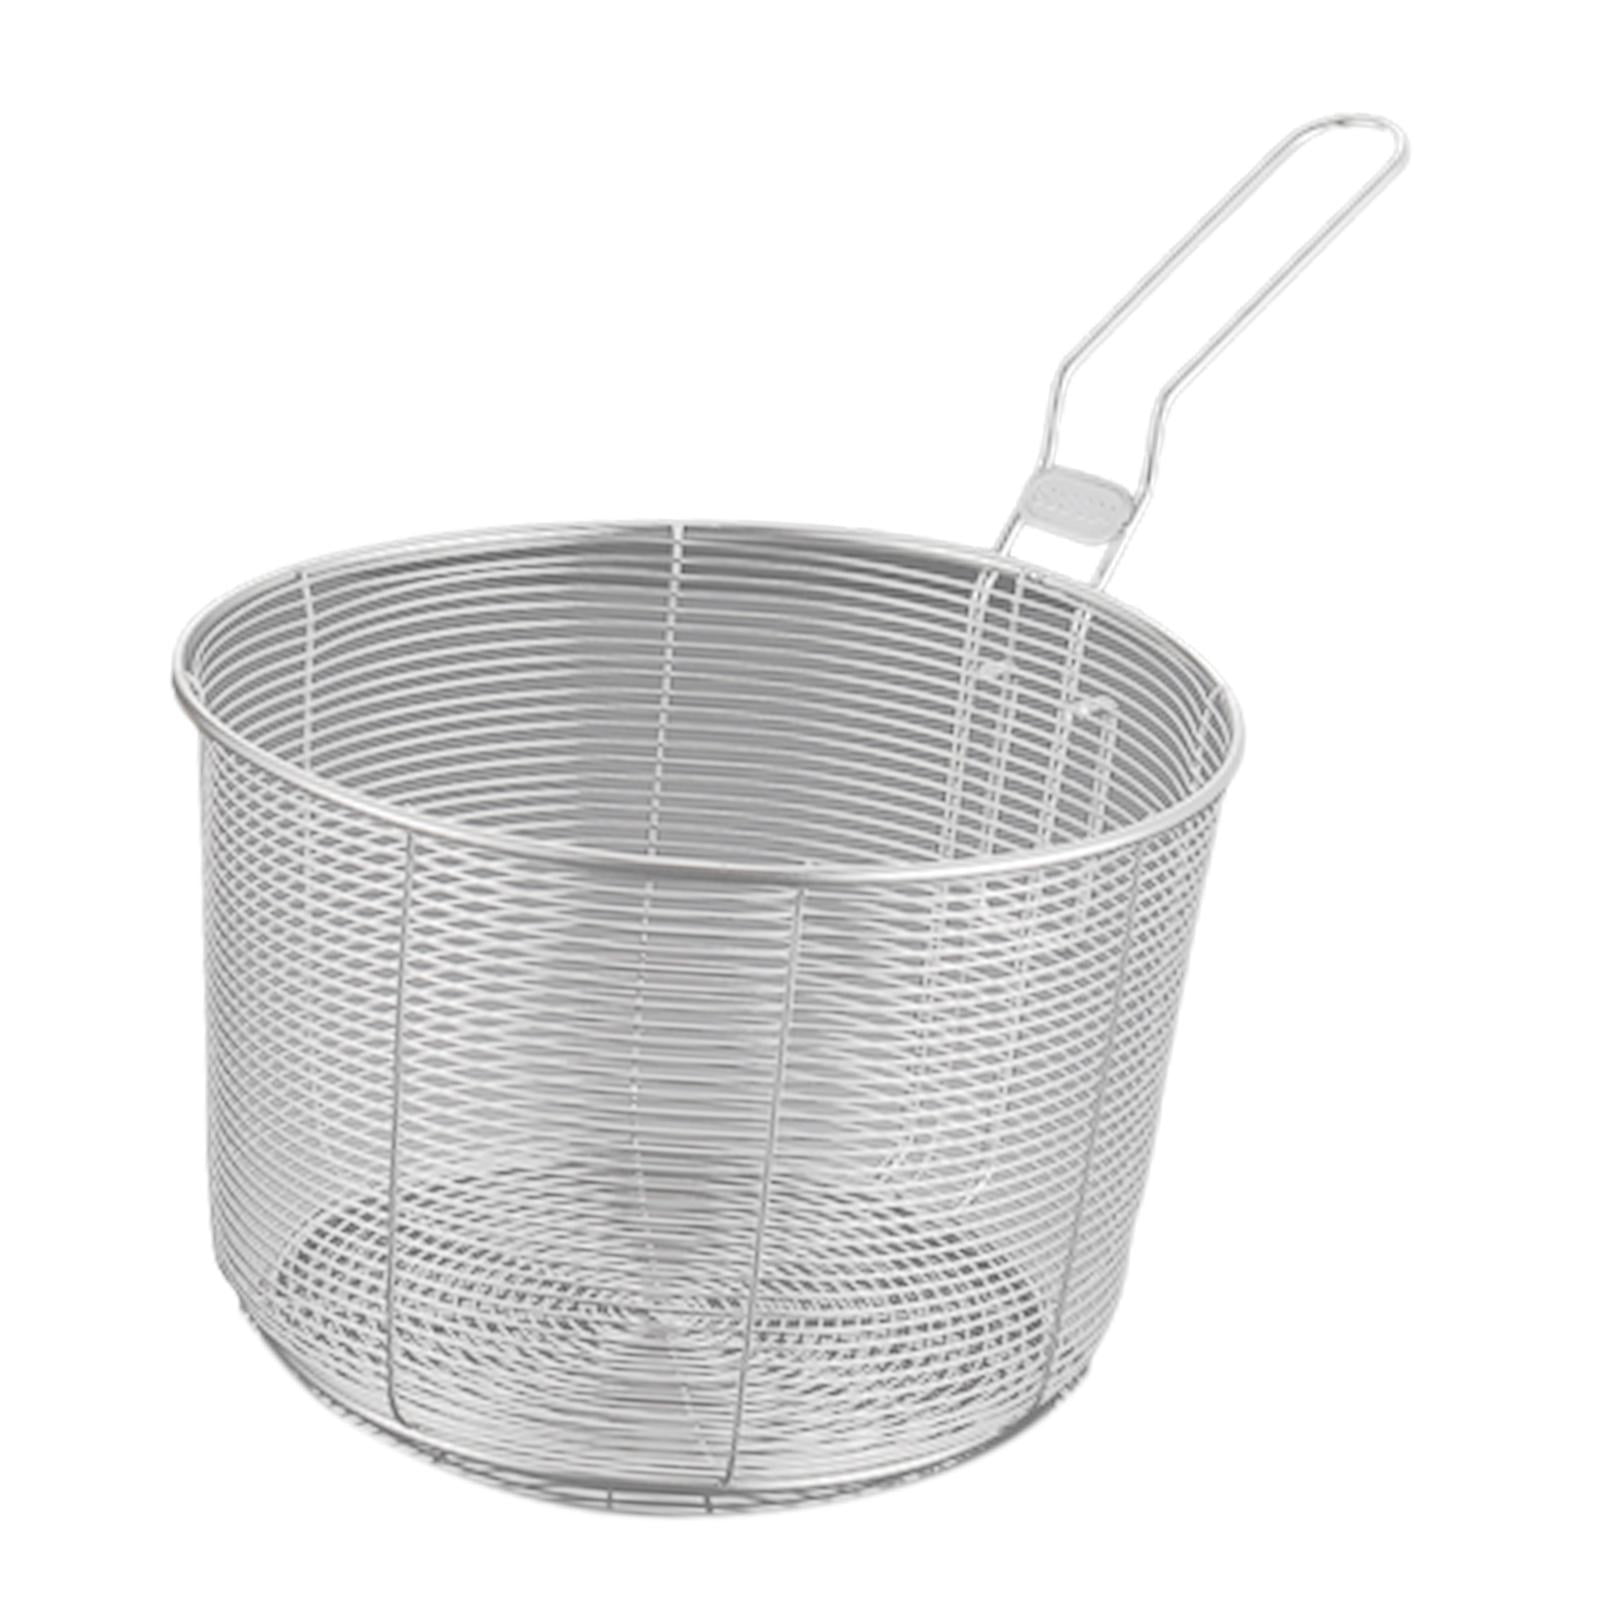 Round Mesh Fryer Basket, 9.5 diameter